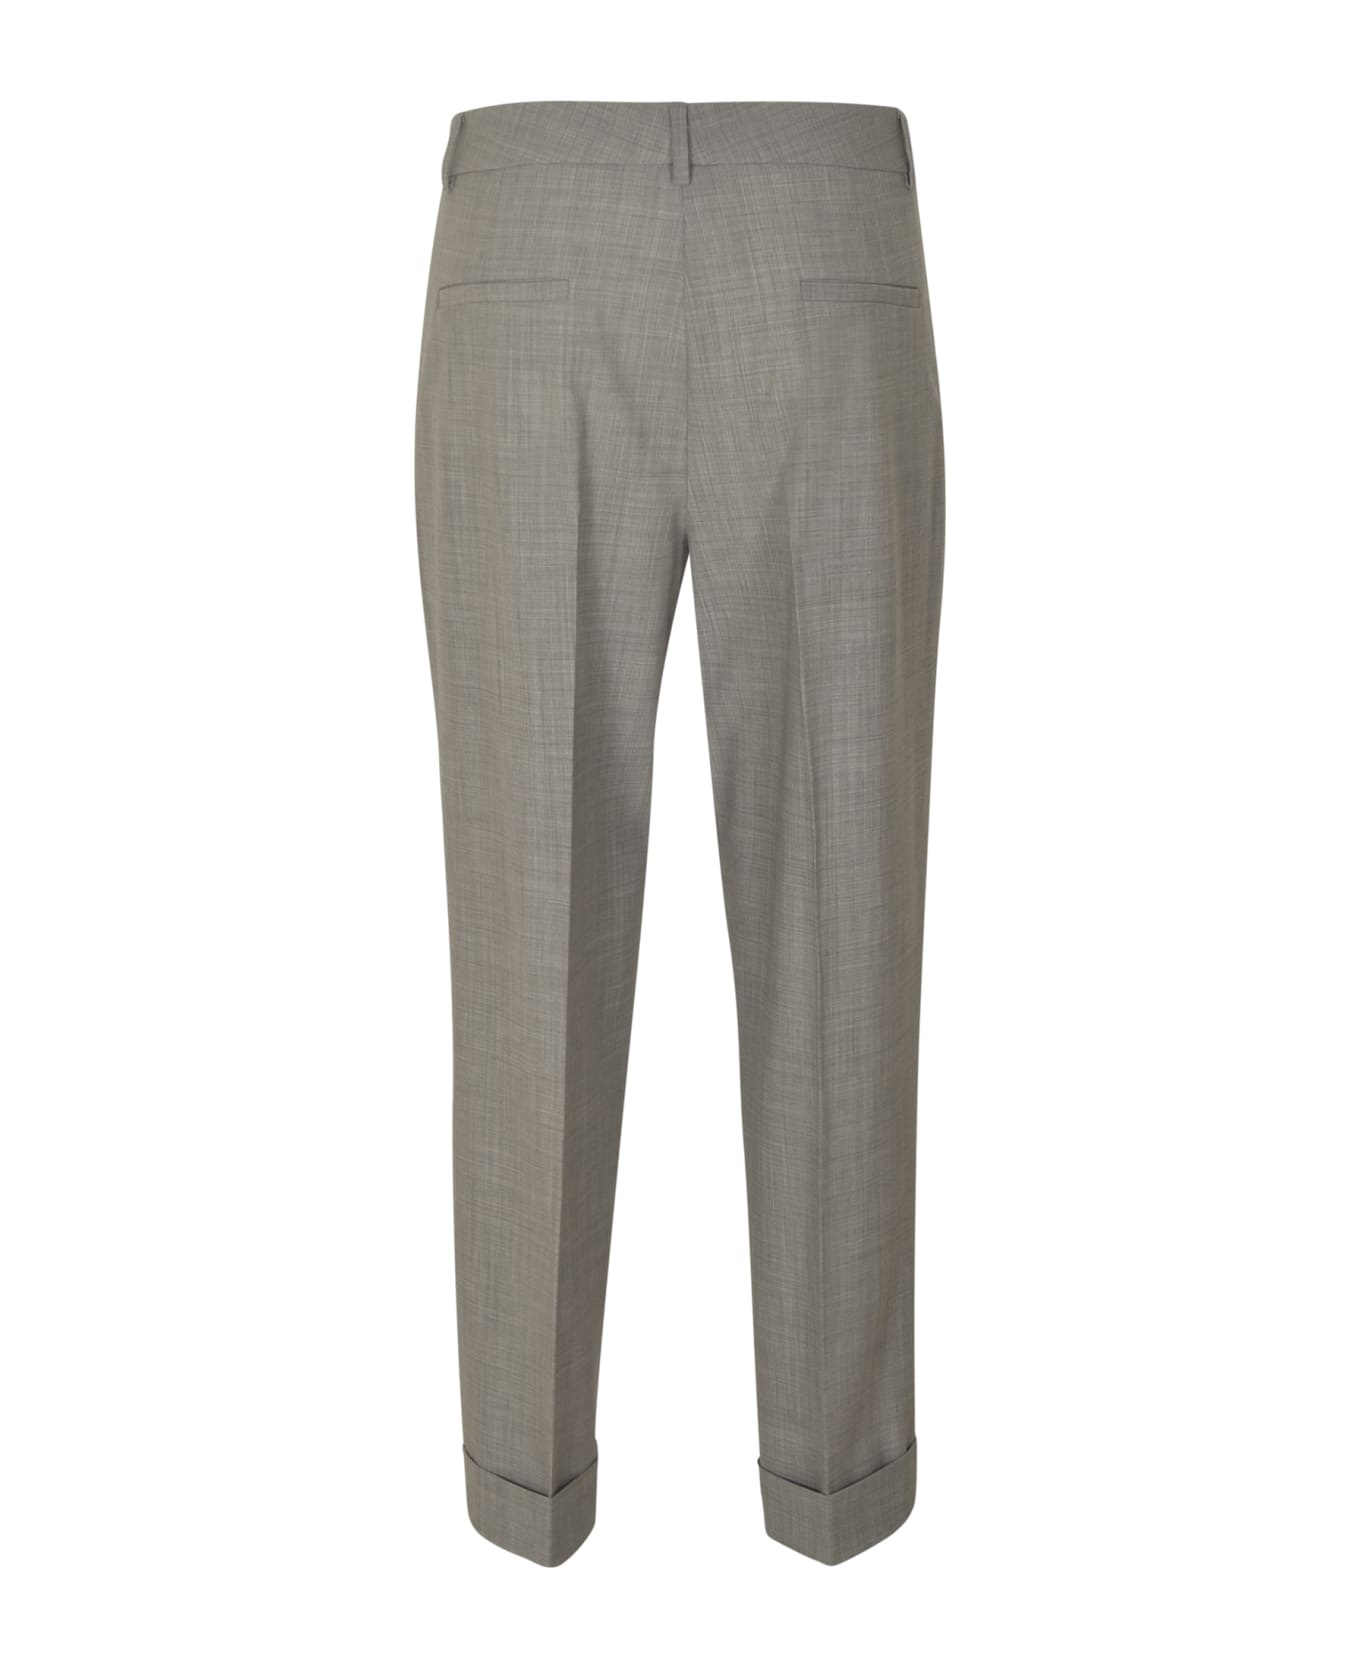 QL2 Classic Plain Trousers - Gray ボトムス